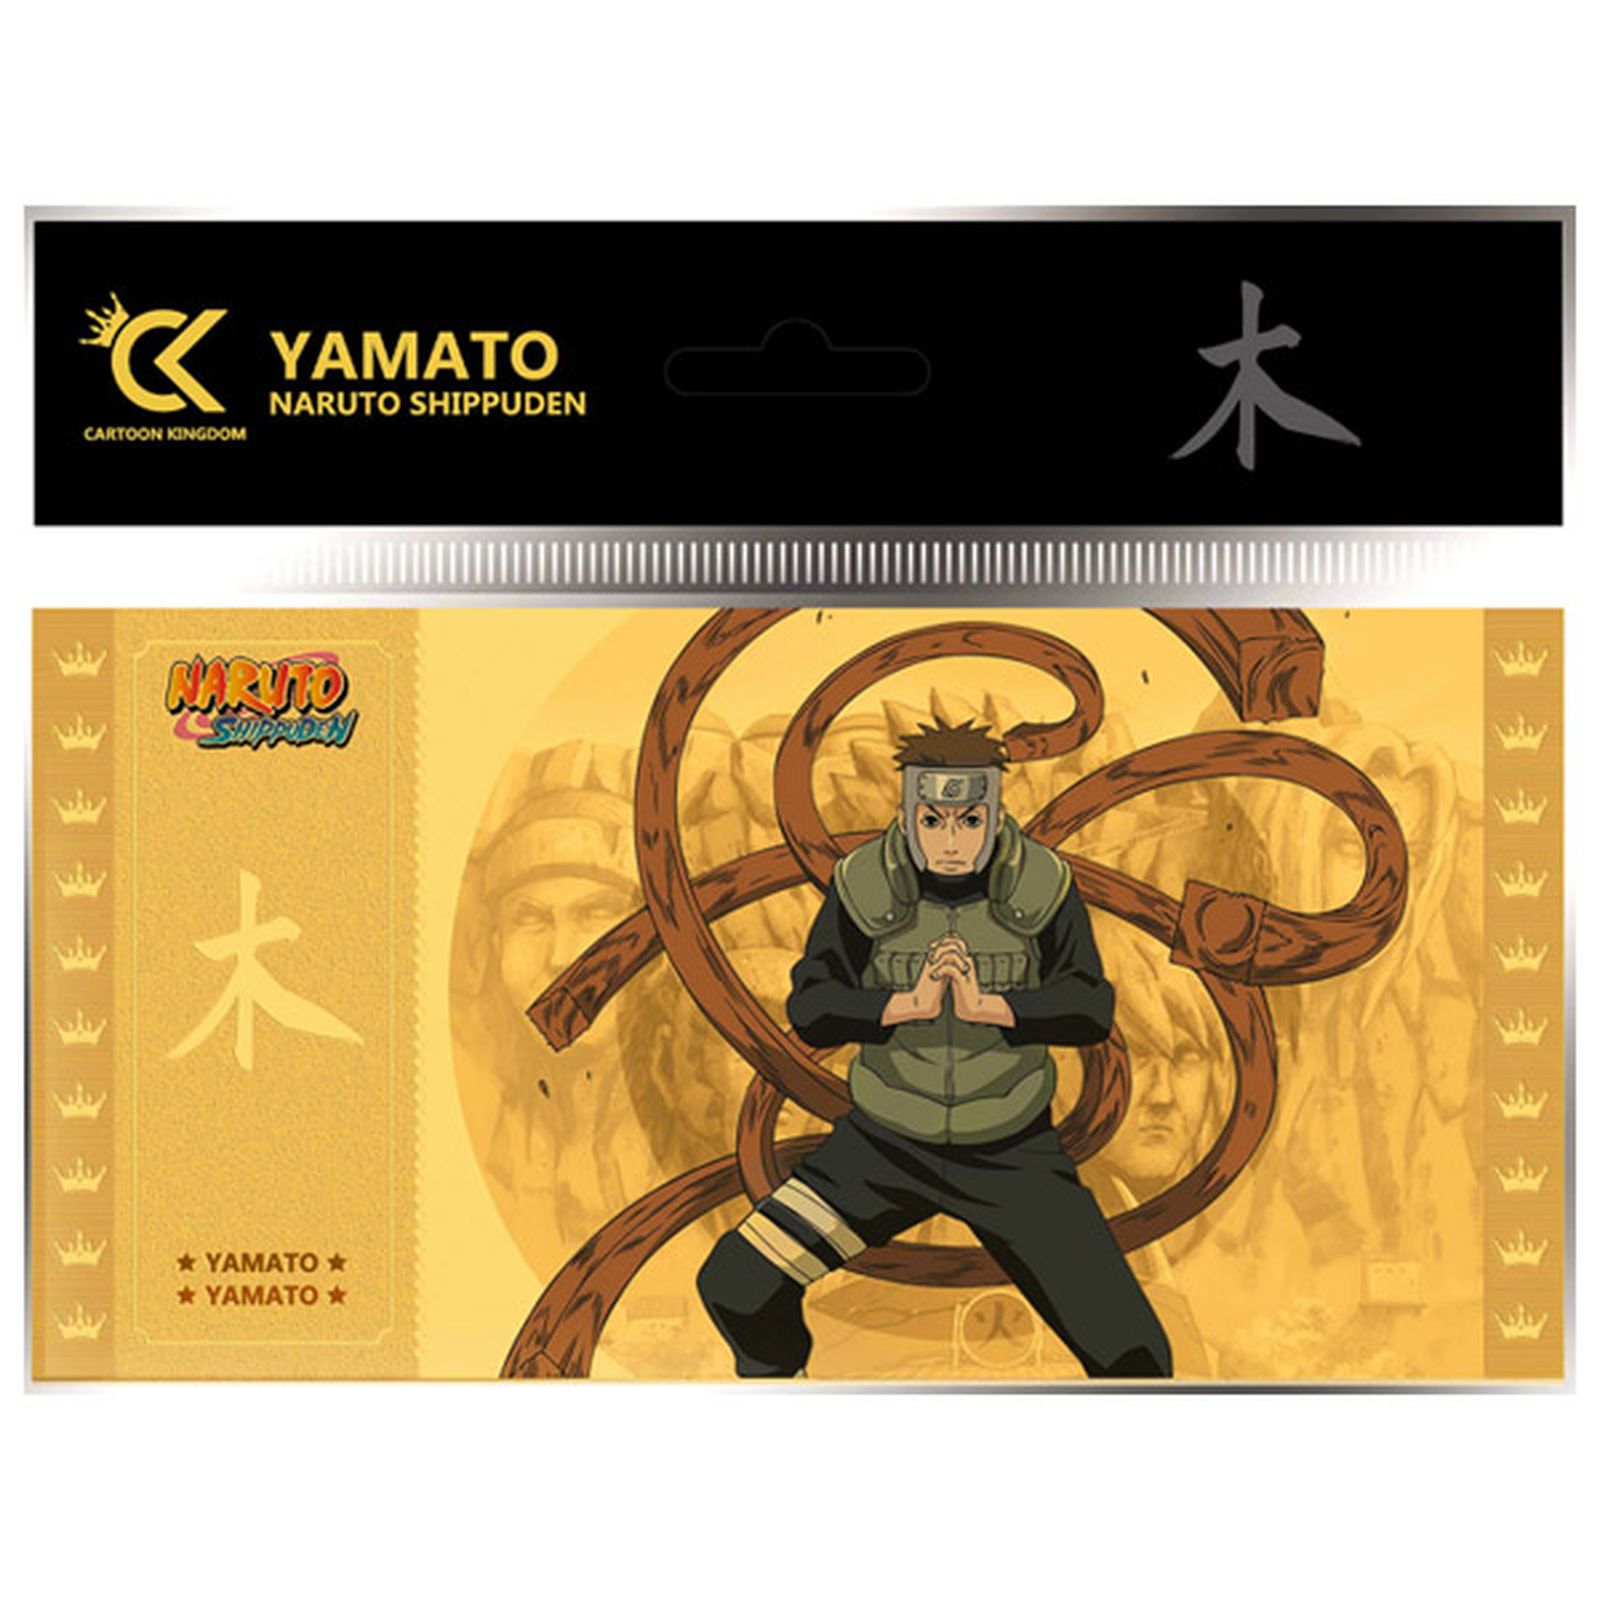 GOLDEN TICKET YAMATO 10 SOBRES NARUTO SHIPPUDEN #7 COLLECTION 1